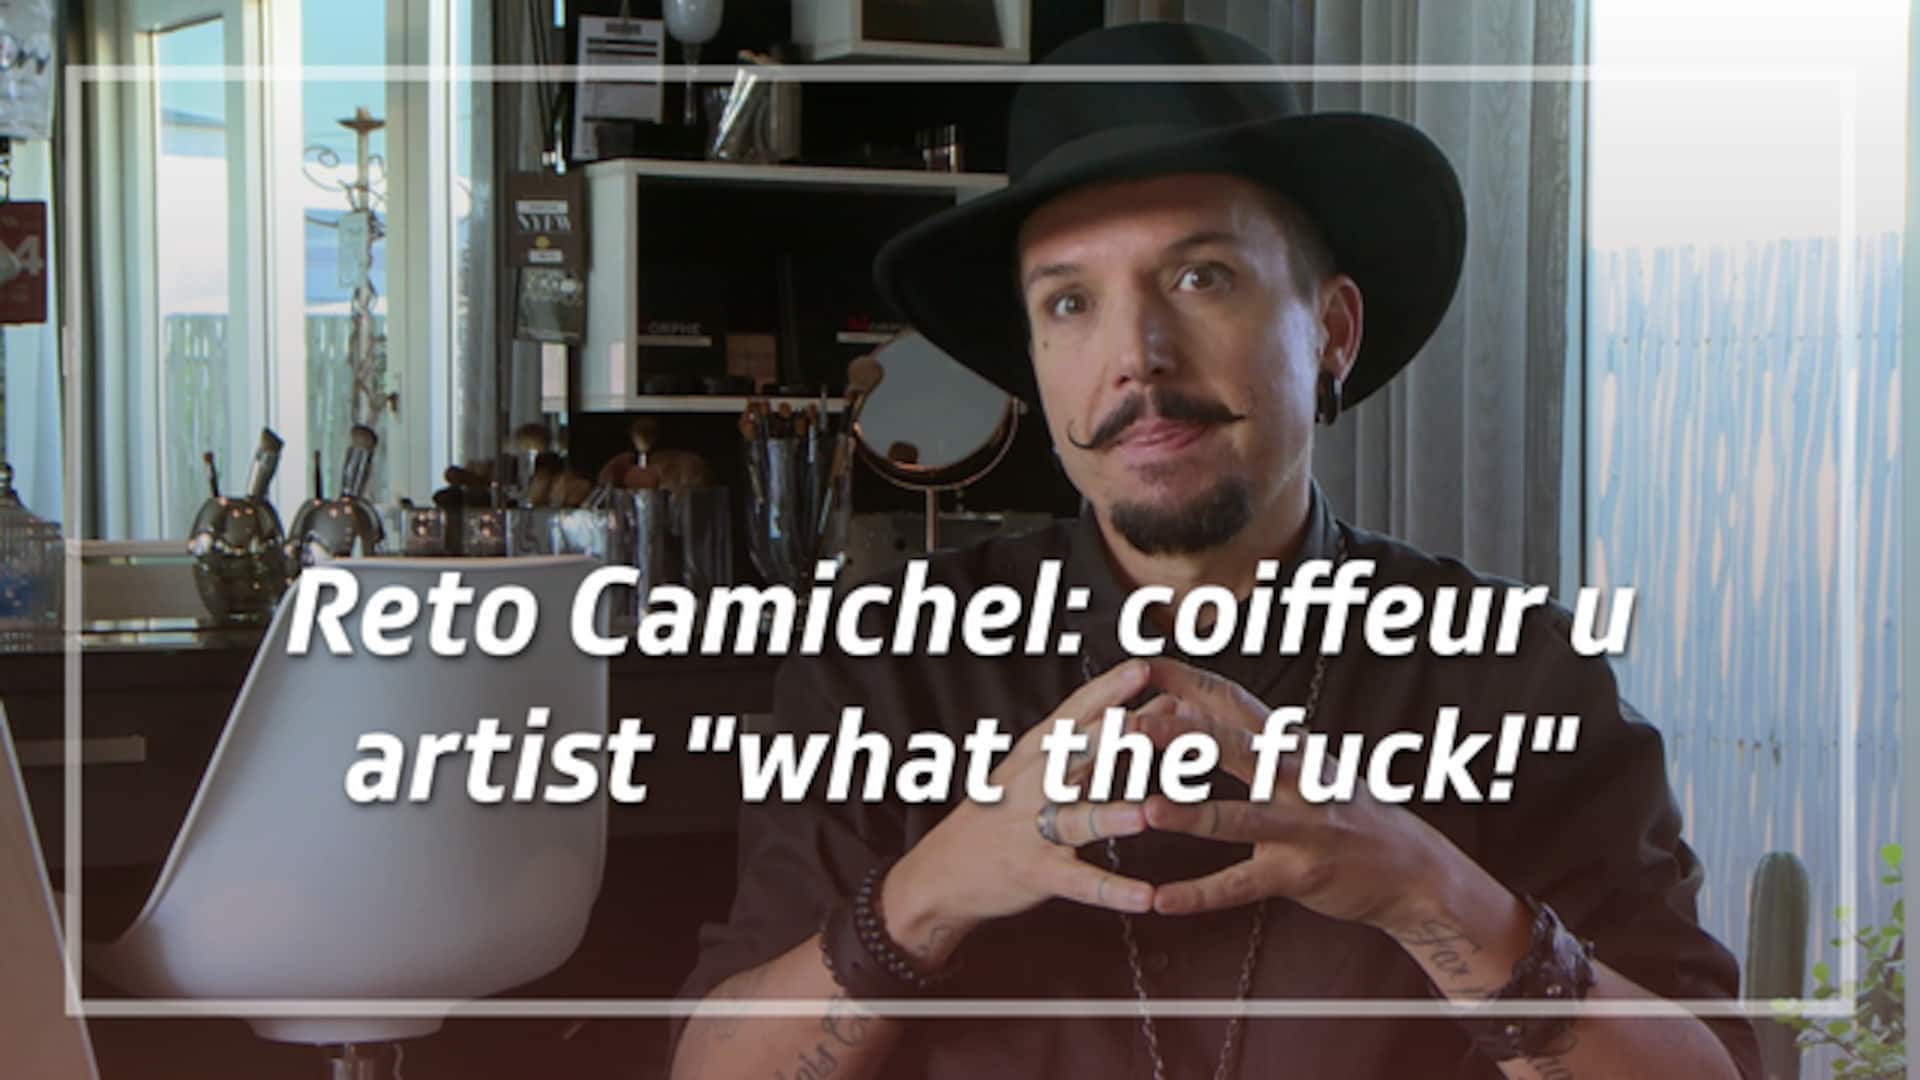 Reto Camichel - coiffeur u artist "what the fuck!"